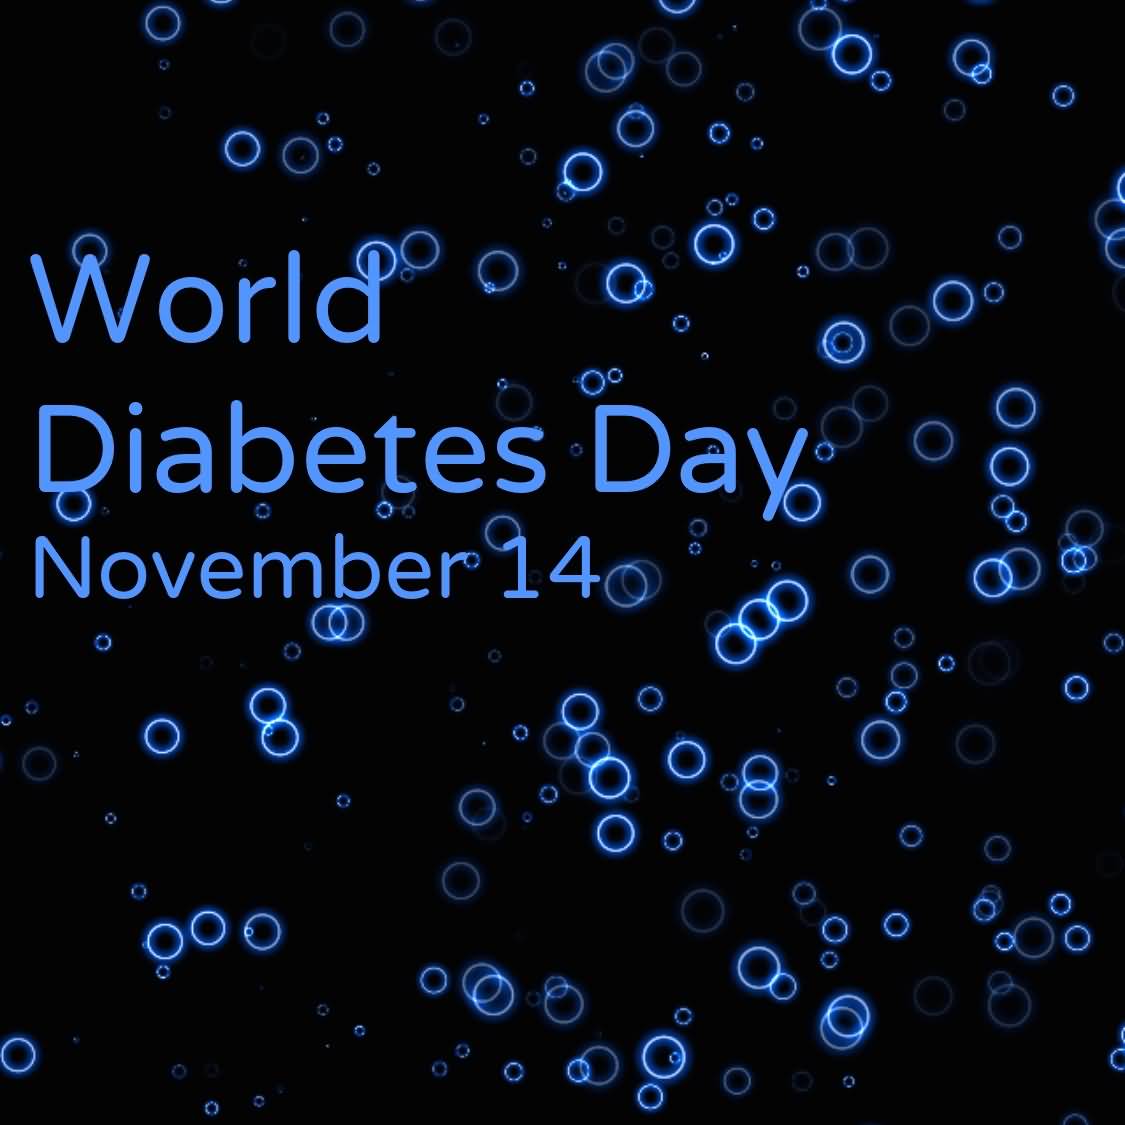 World Diabetes Day November 14 Image